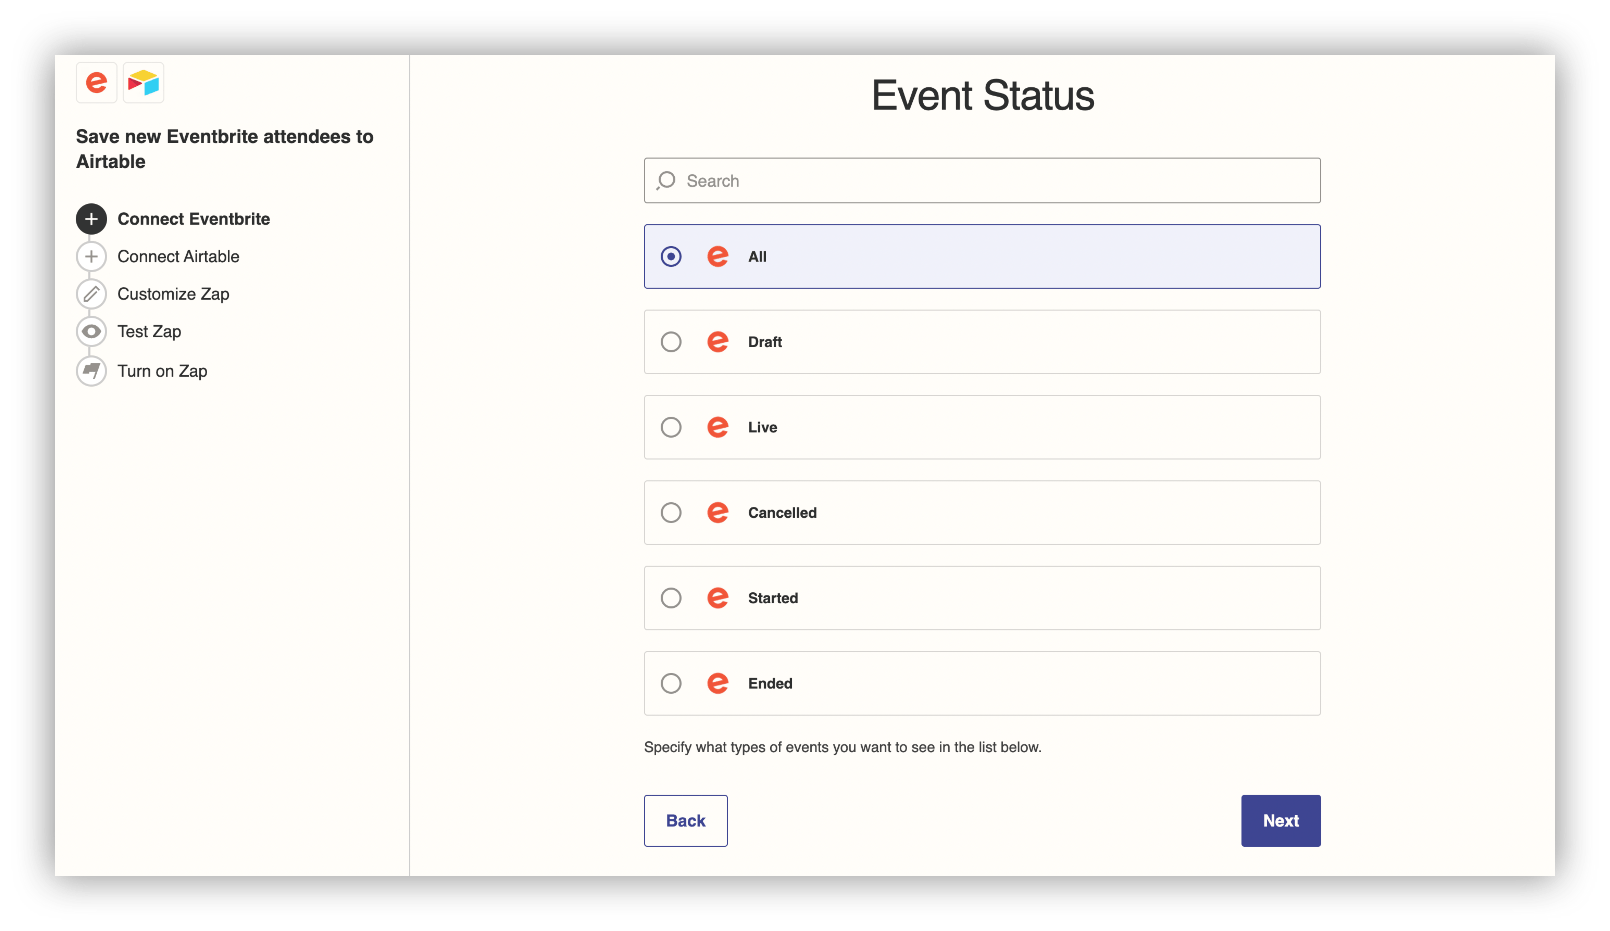 event type